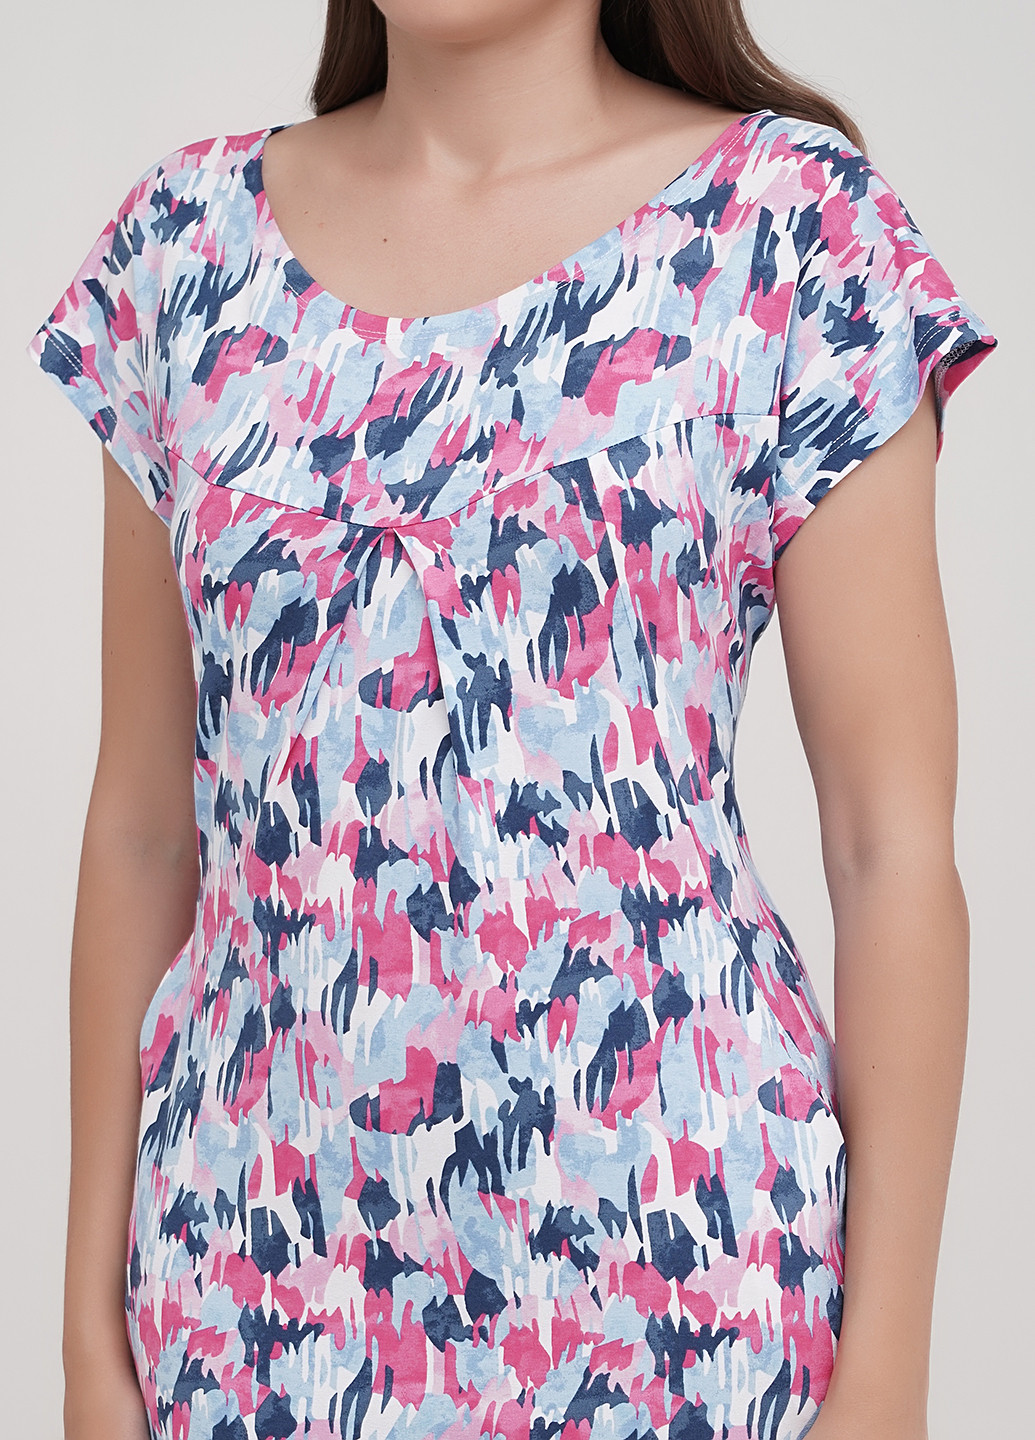 Комбинированное домашнее платье платье-футболка Трикомир с абстрактным узором